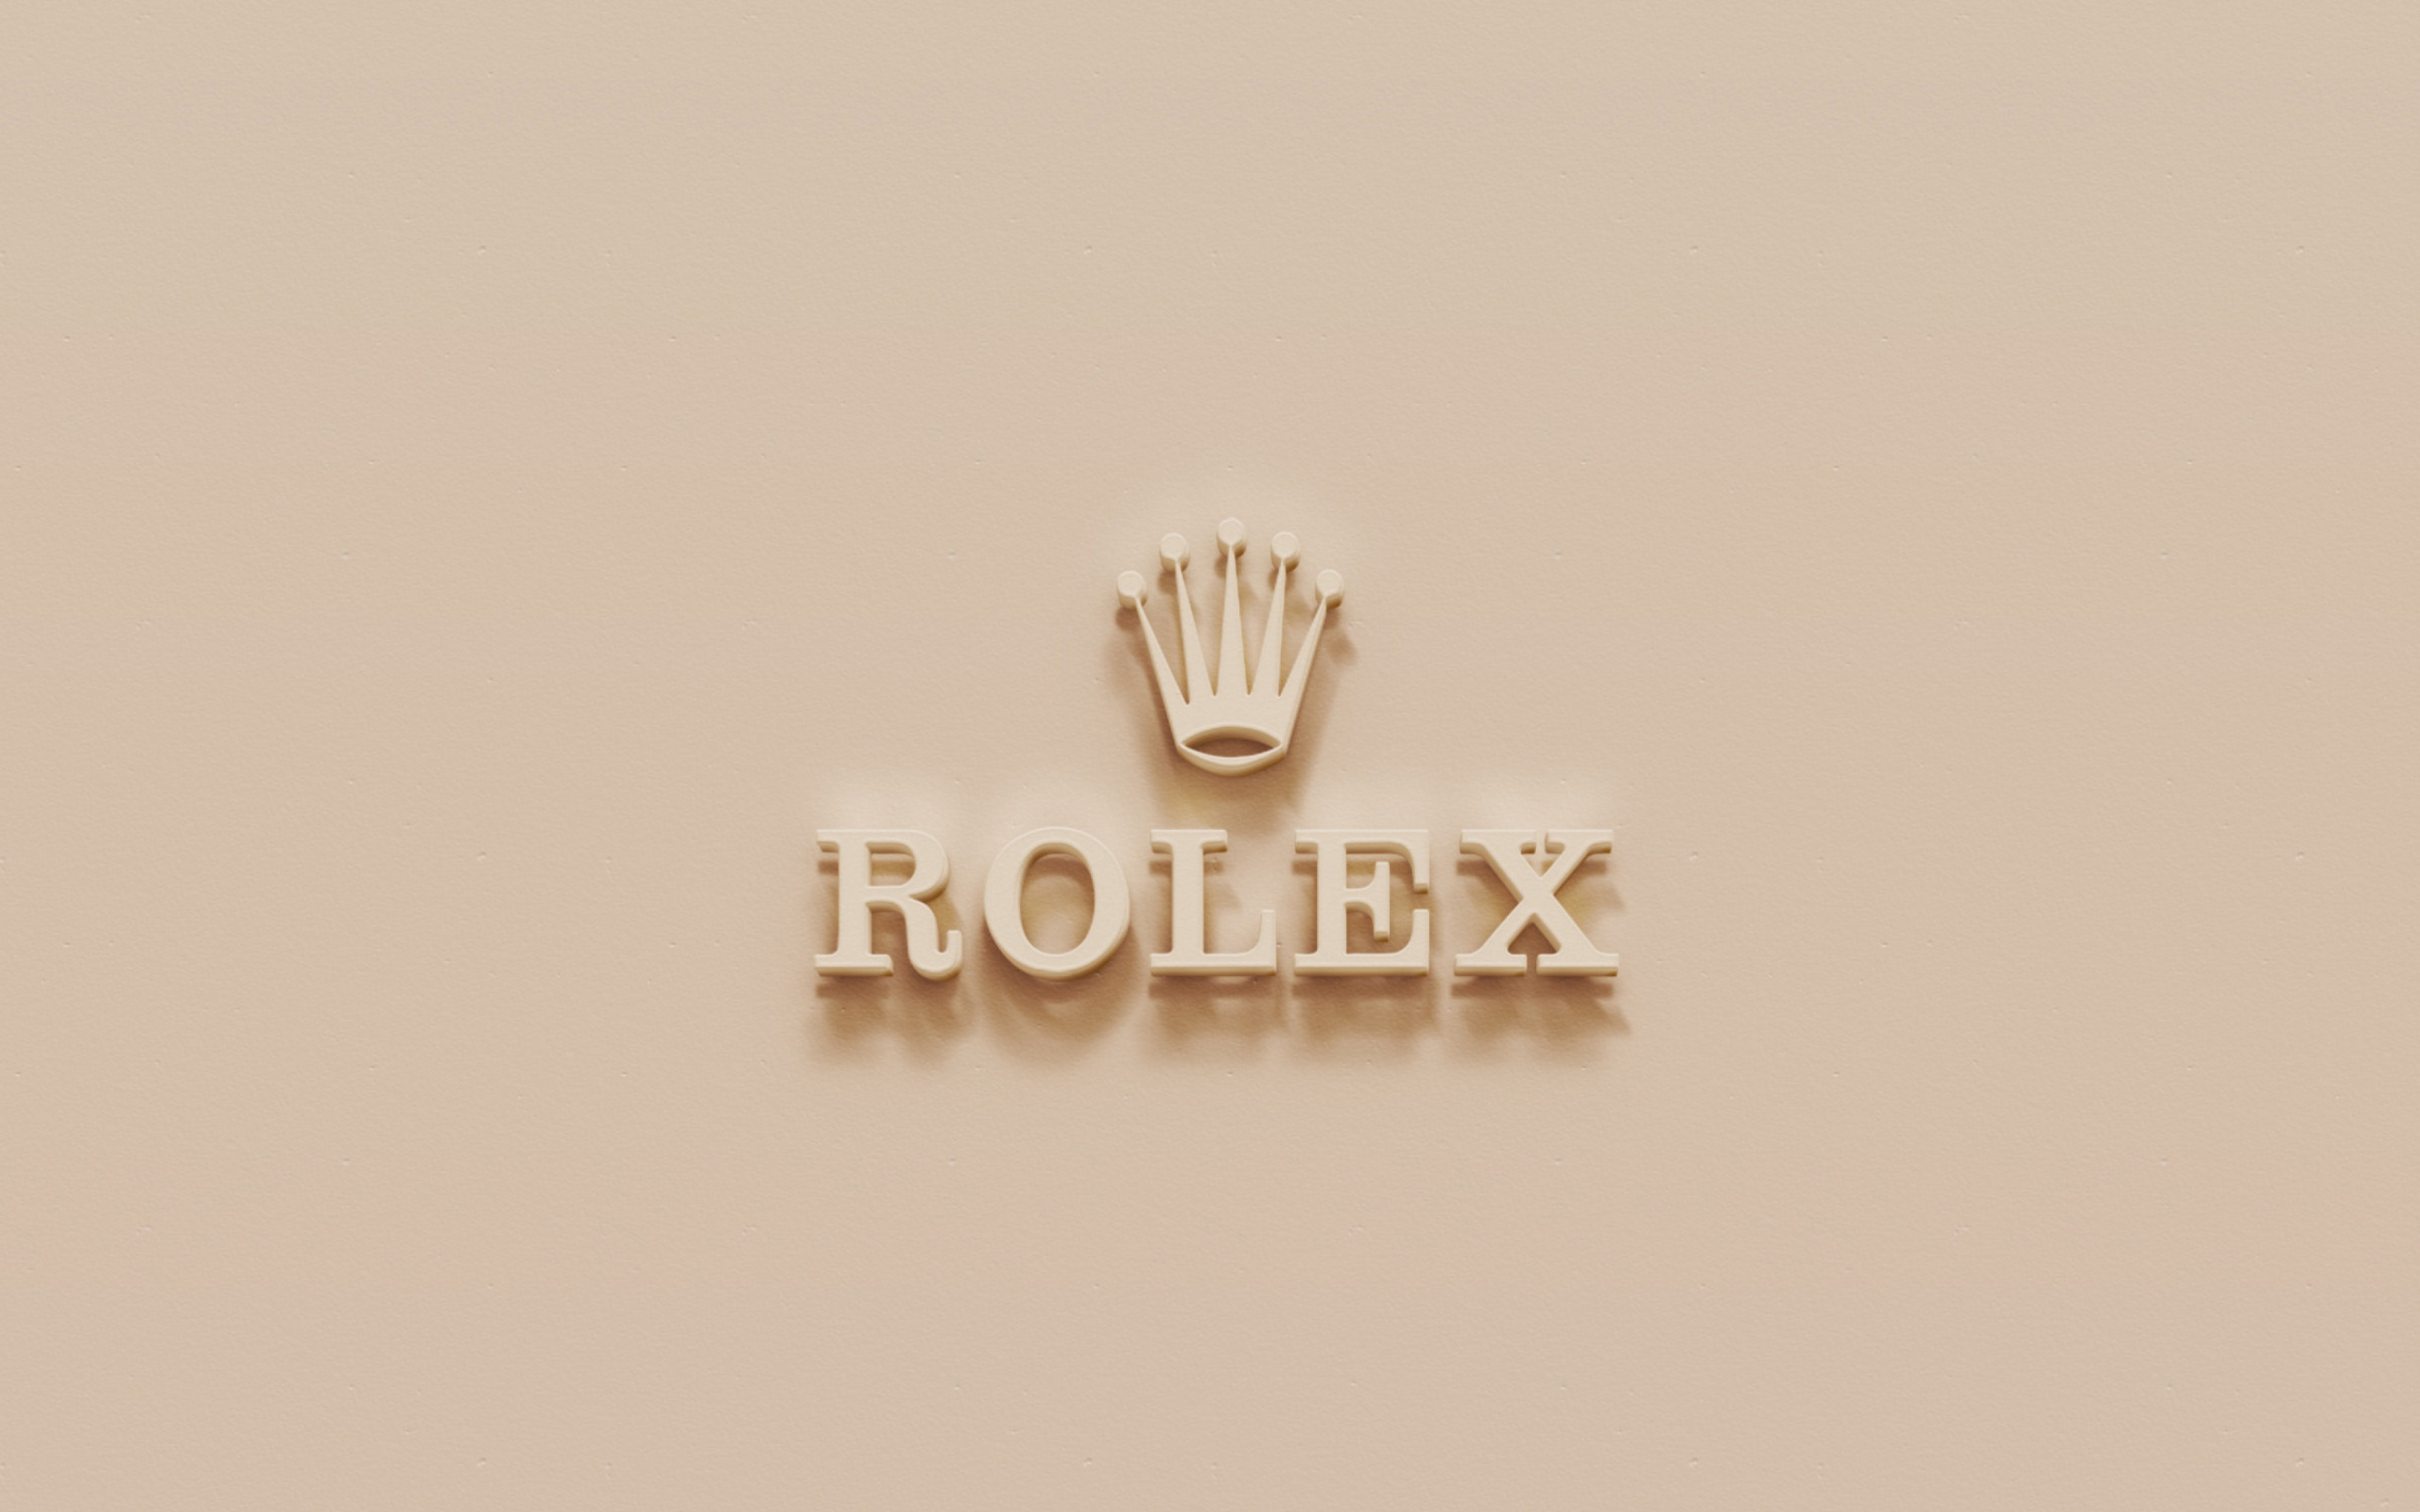 Rolex Golden Logo wallpaper 2560x1600